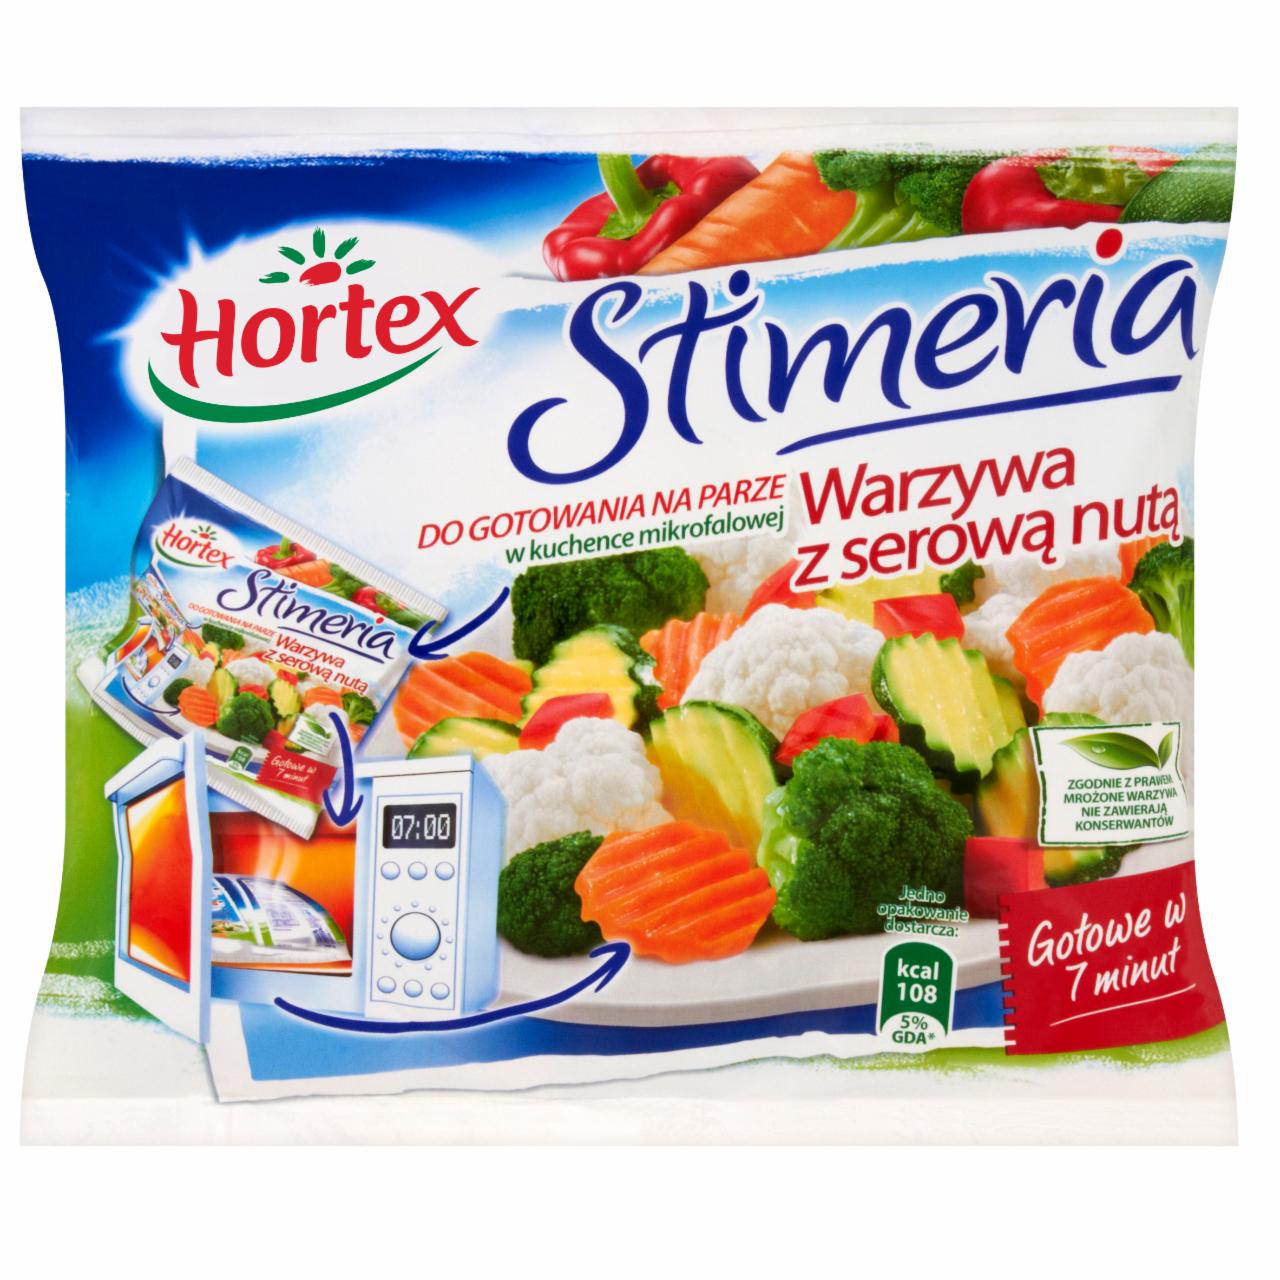 Zdjęcia - Hortex Stimeria Warzywa z serową nutą 300 g